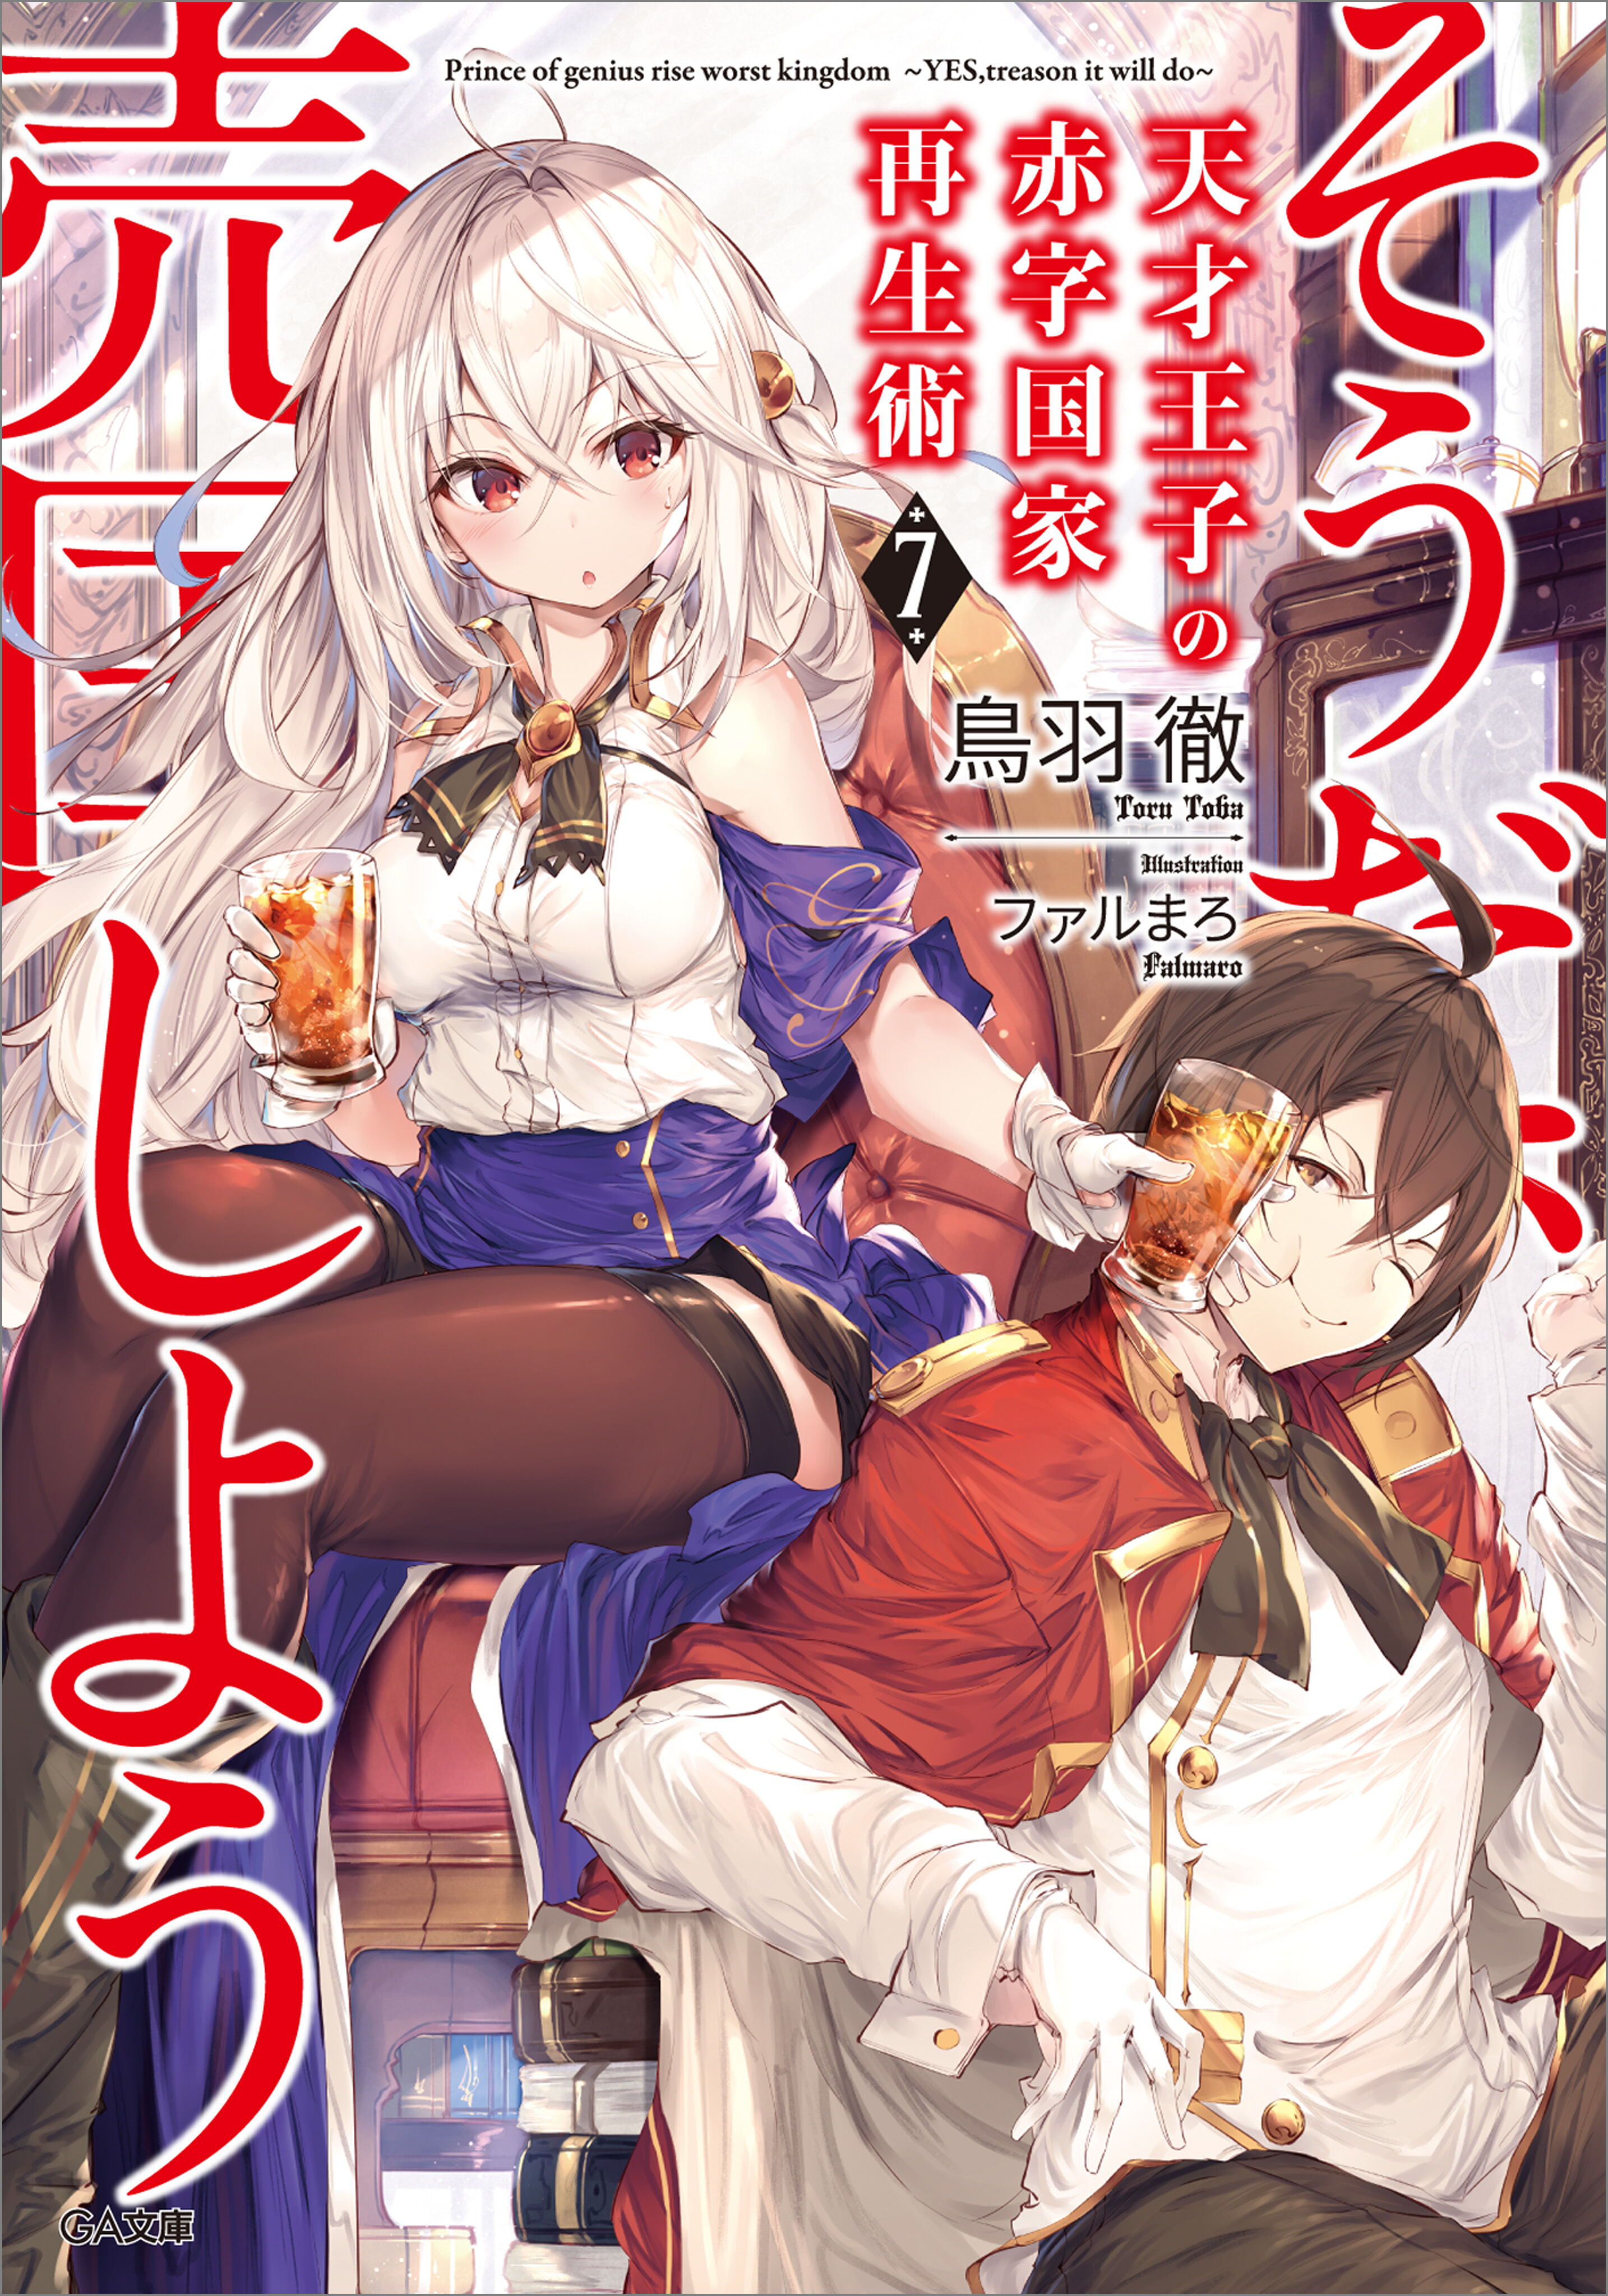 Light Novel Volume 5, Tensai Ouji no Akaji Wiki